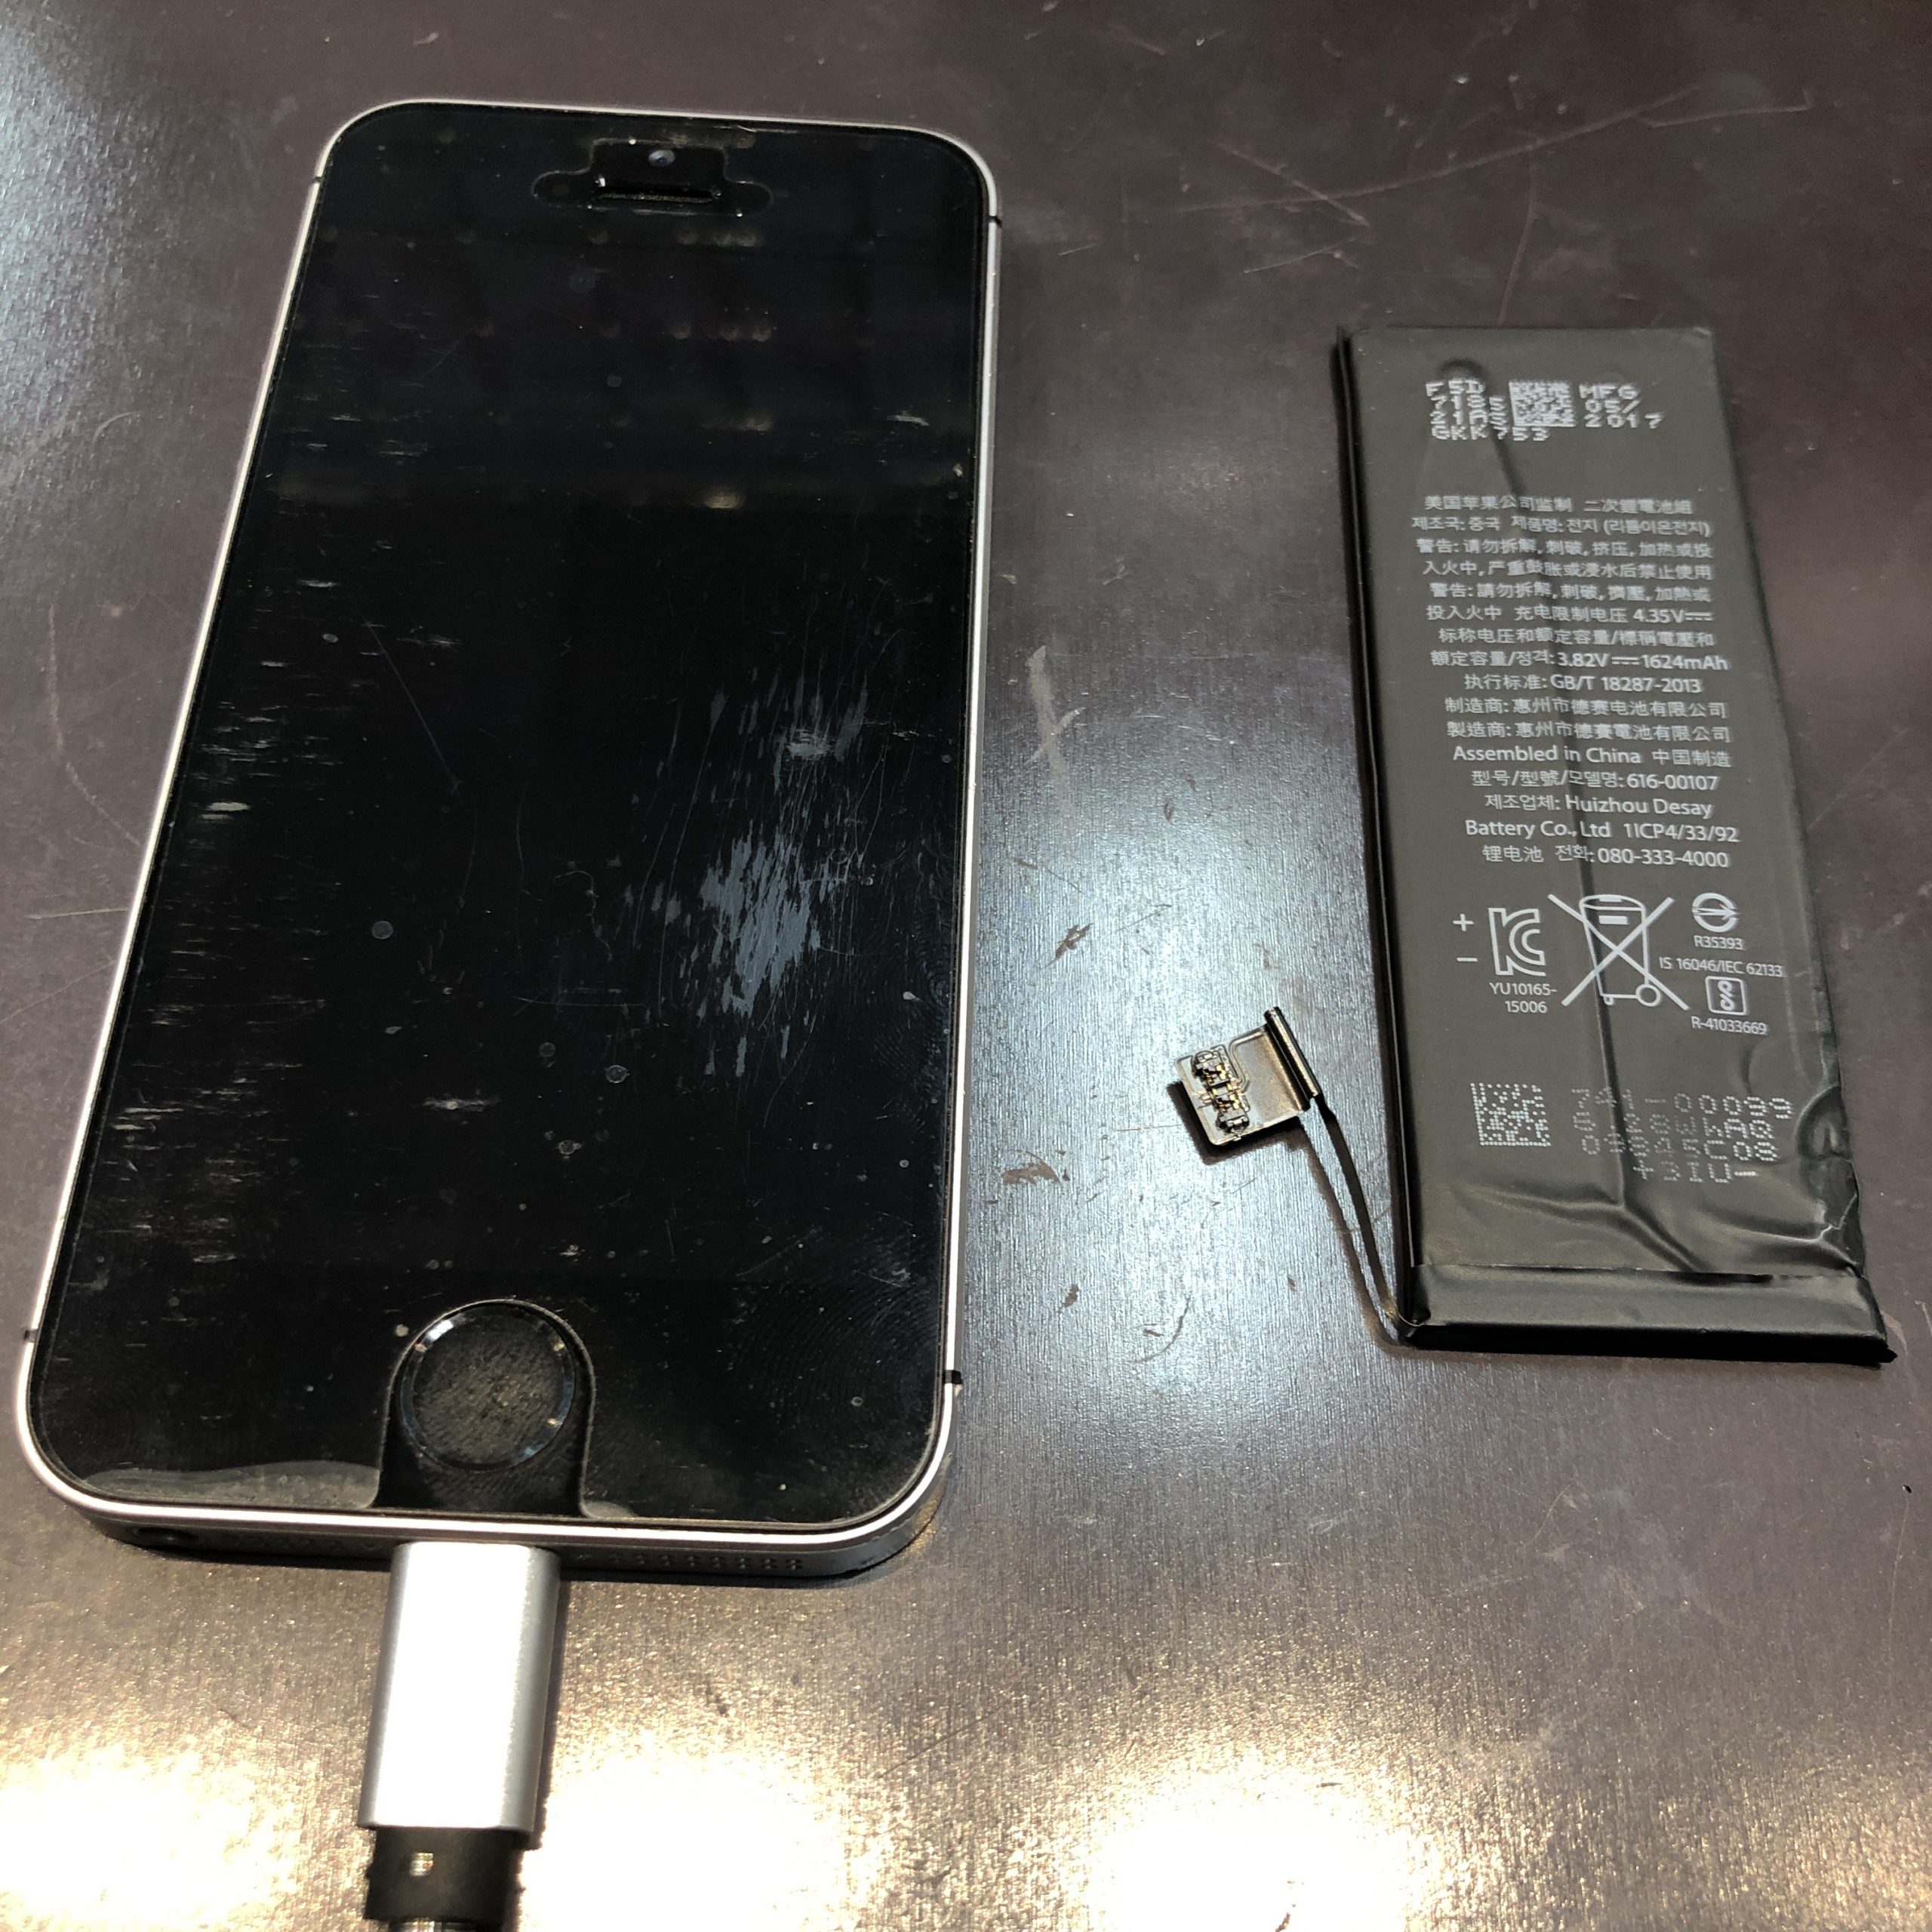 【 iPhone SE 】武雄市よりバッテリー交換にお越しいただきました